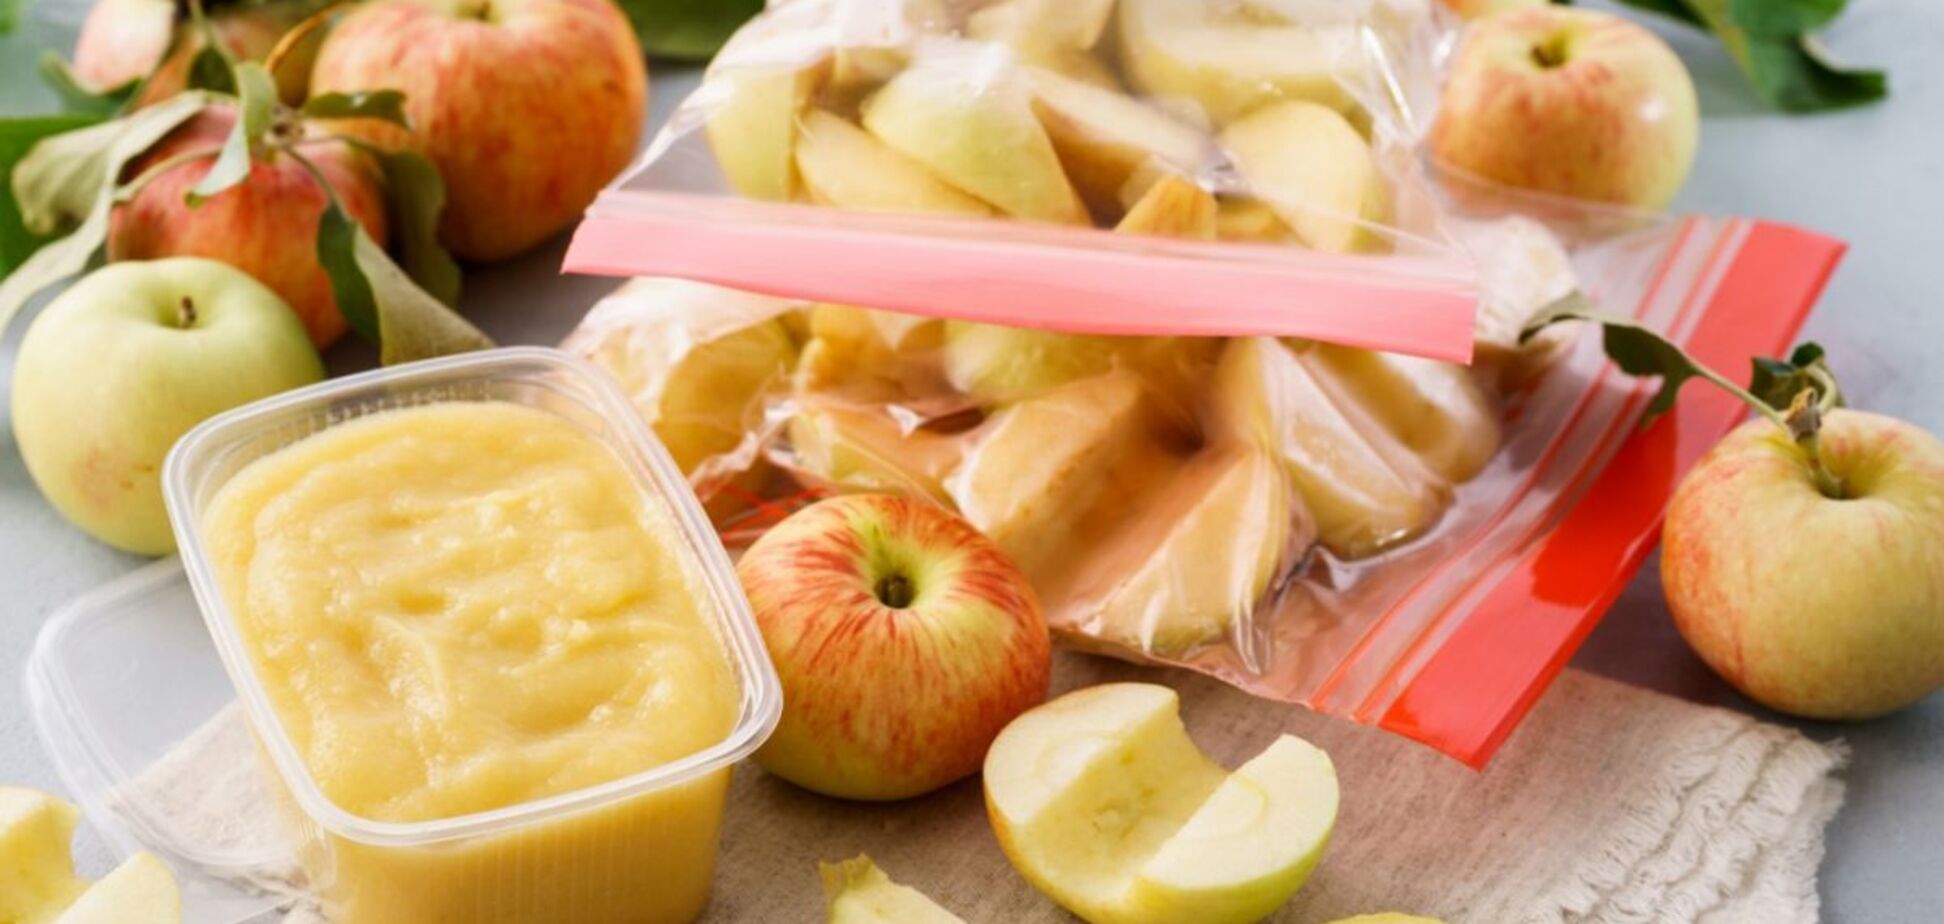 Как правильно заморозить яблоки, чтобы они не почернели: лучший способ